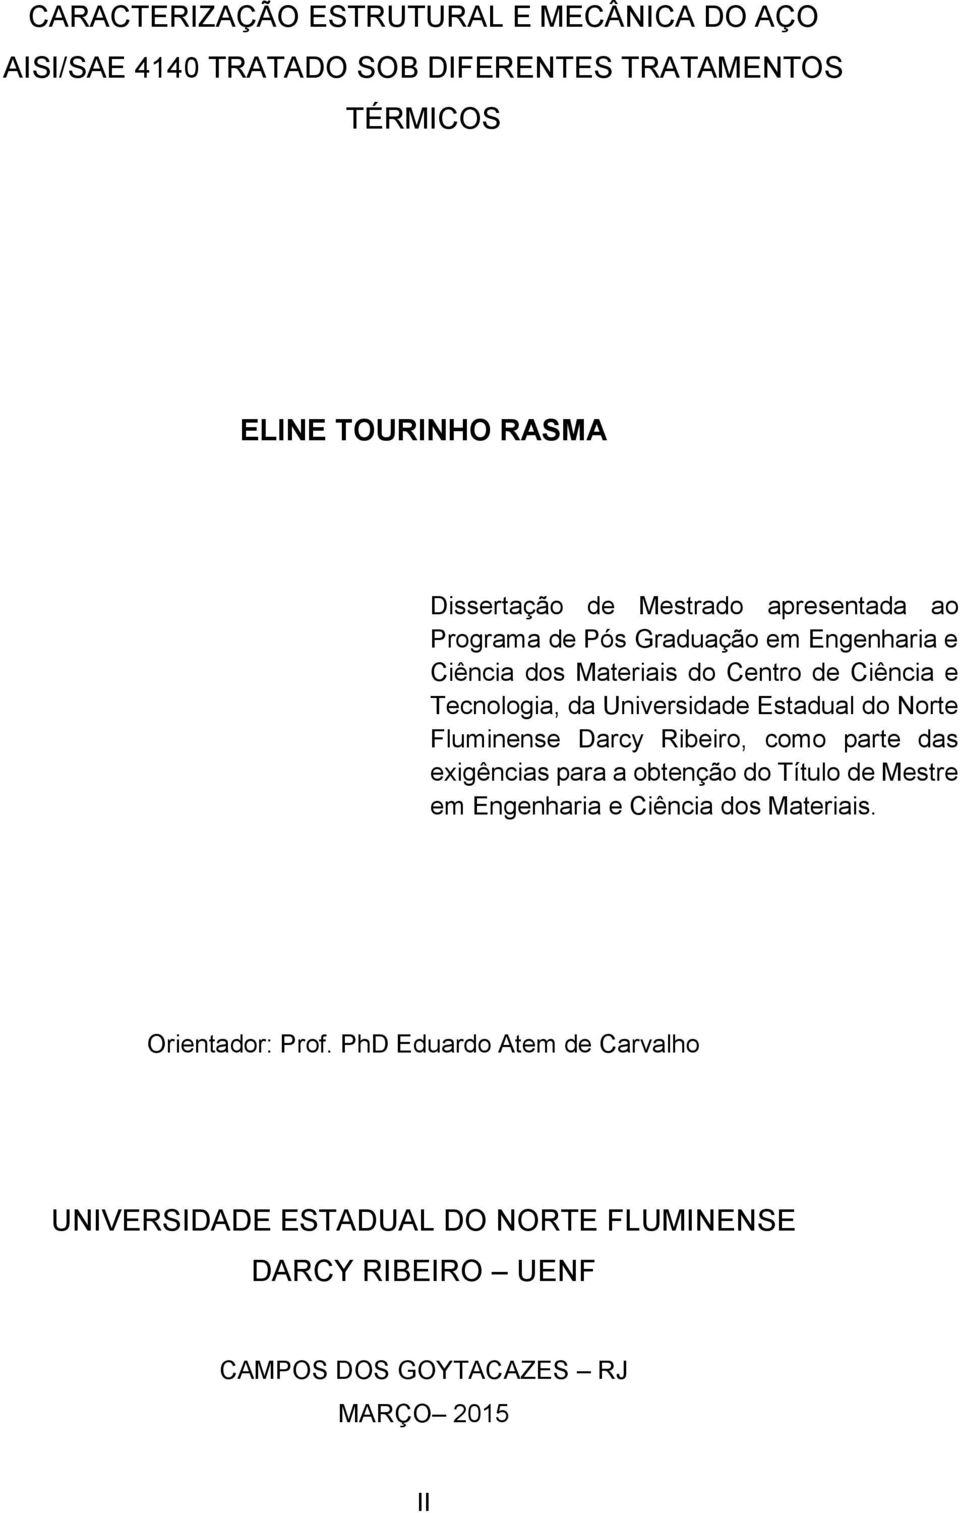 Estadual do Norte Fluminense Darcy Ribeiro, como parte das exigências para a obtenção do Título de Mestre em Engenharia e Ciência dos